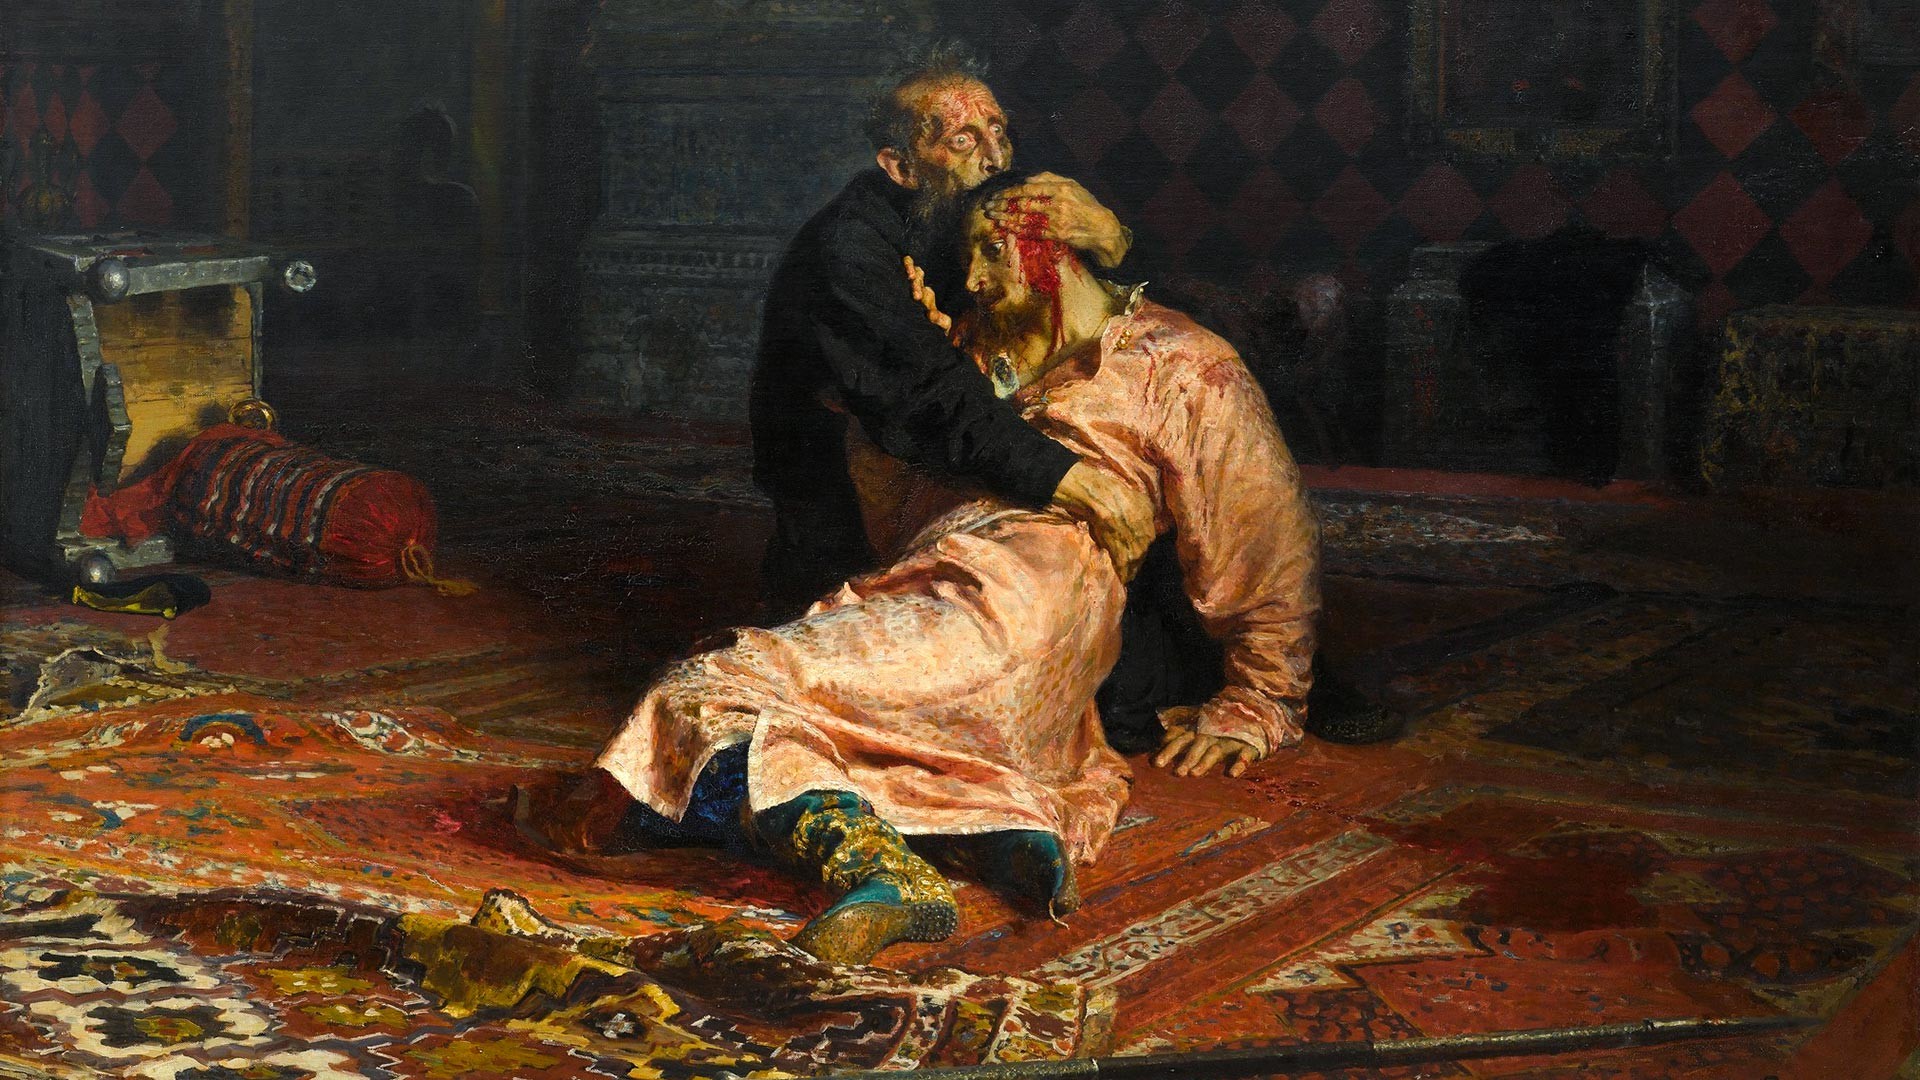 14枚の有名絵画で見るロシアの歴史 ロシア ビヨンド